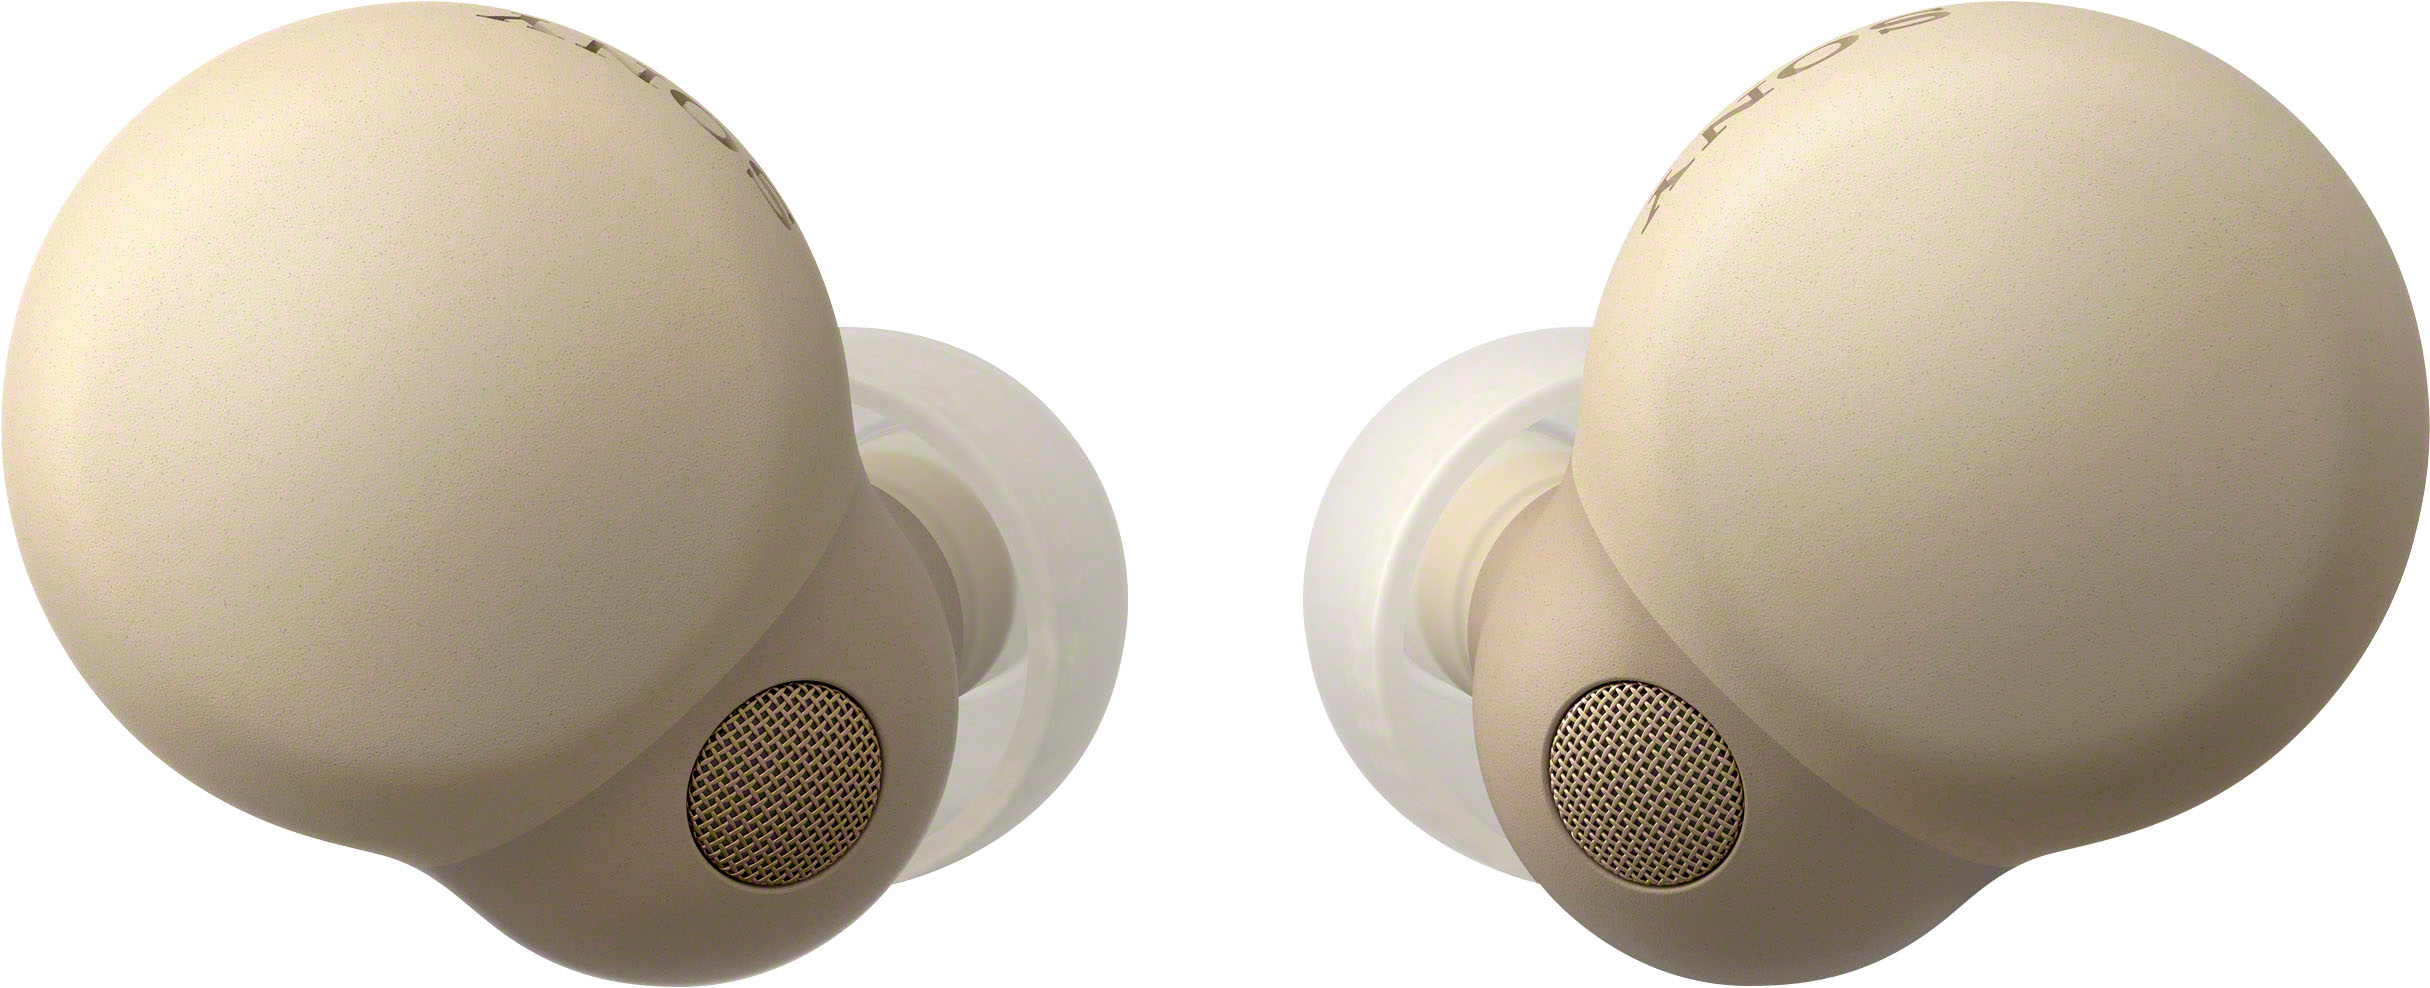 Sony - LinkBuds S True Wireless Noise Canceling Earbuds - Desert Sand